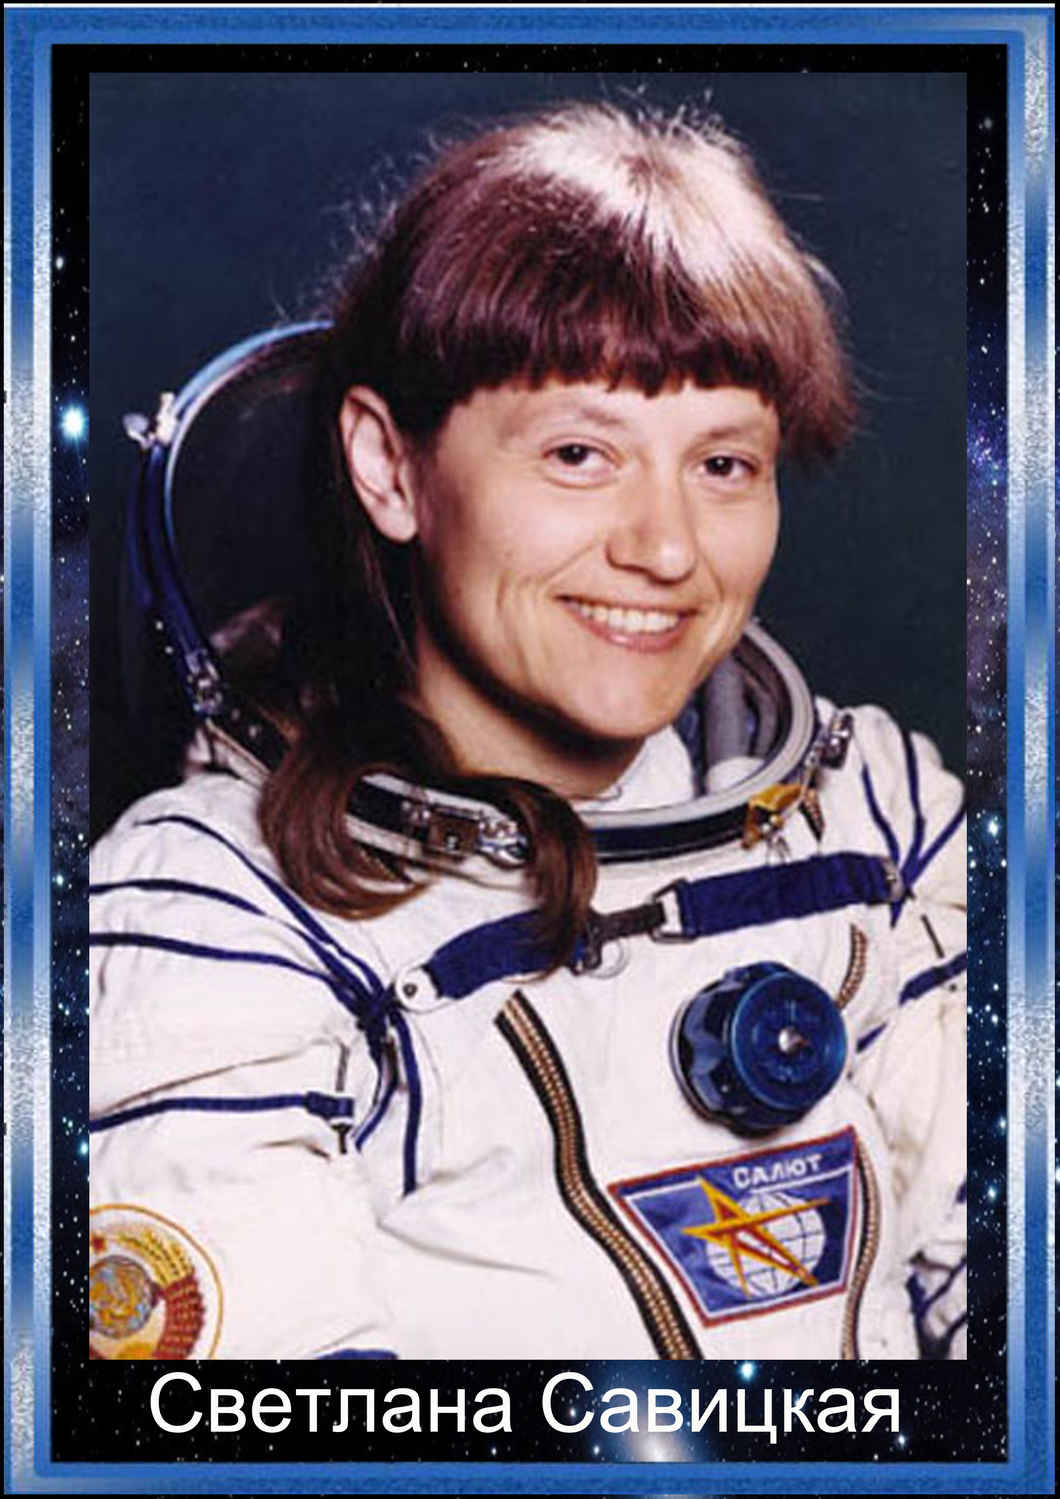 Первая женщина совершившая выход в открытый космос. Савицкая космонавт.